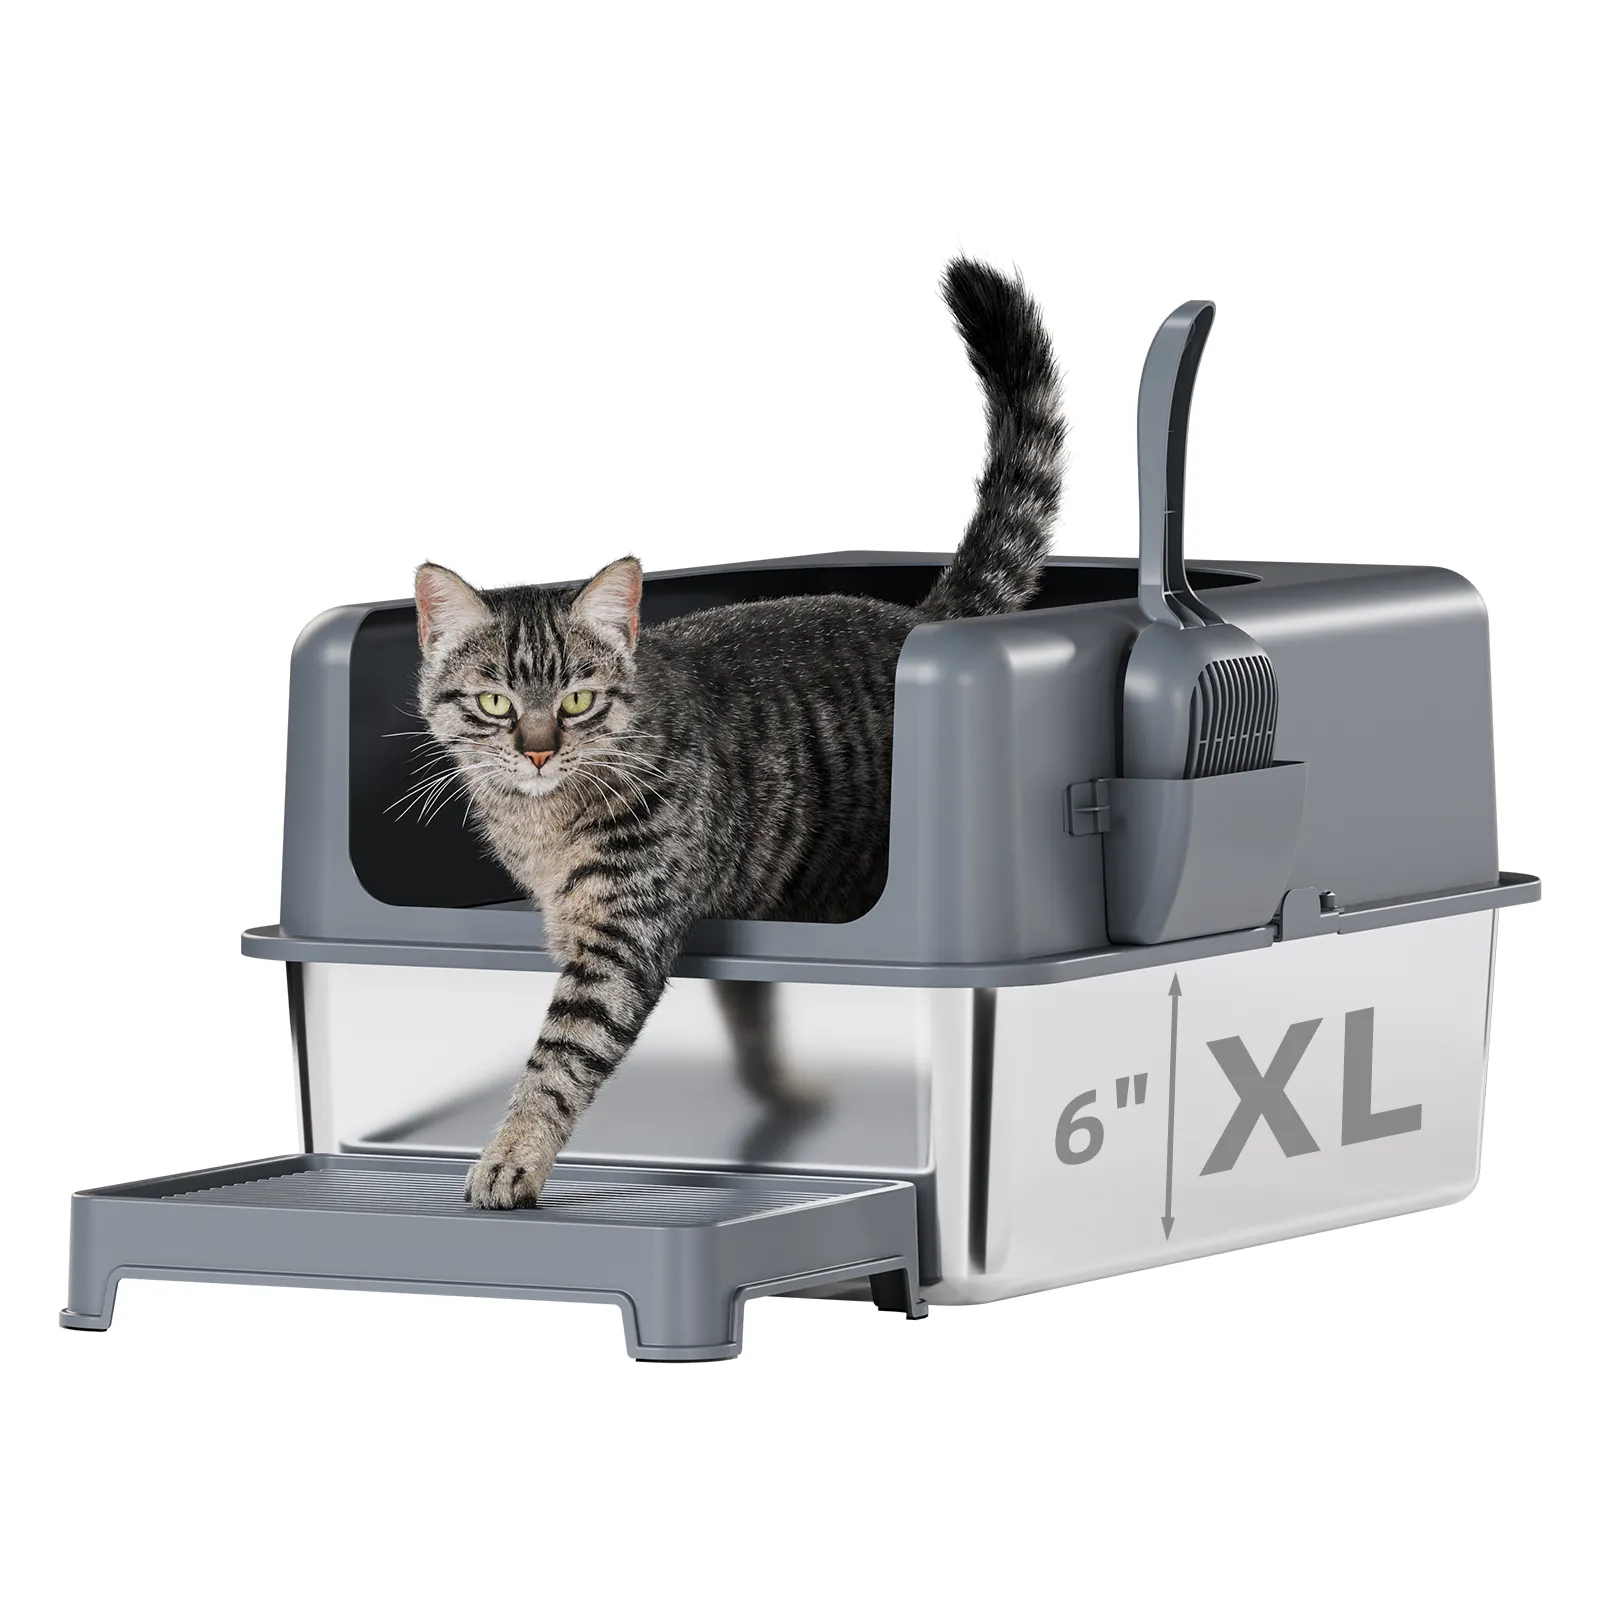 Caja de arena para gatos de acero inoxidable de cara alta, extra grande con tapa para gatos grandes múltiples, incluye alfombrilla y cuchara (24Lx16Wx6H)